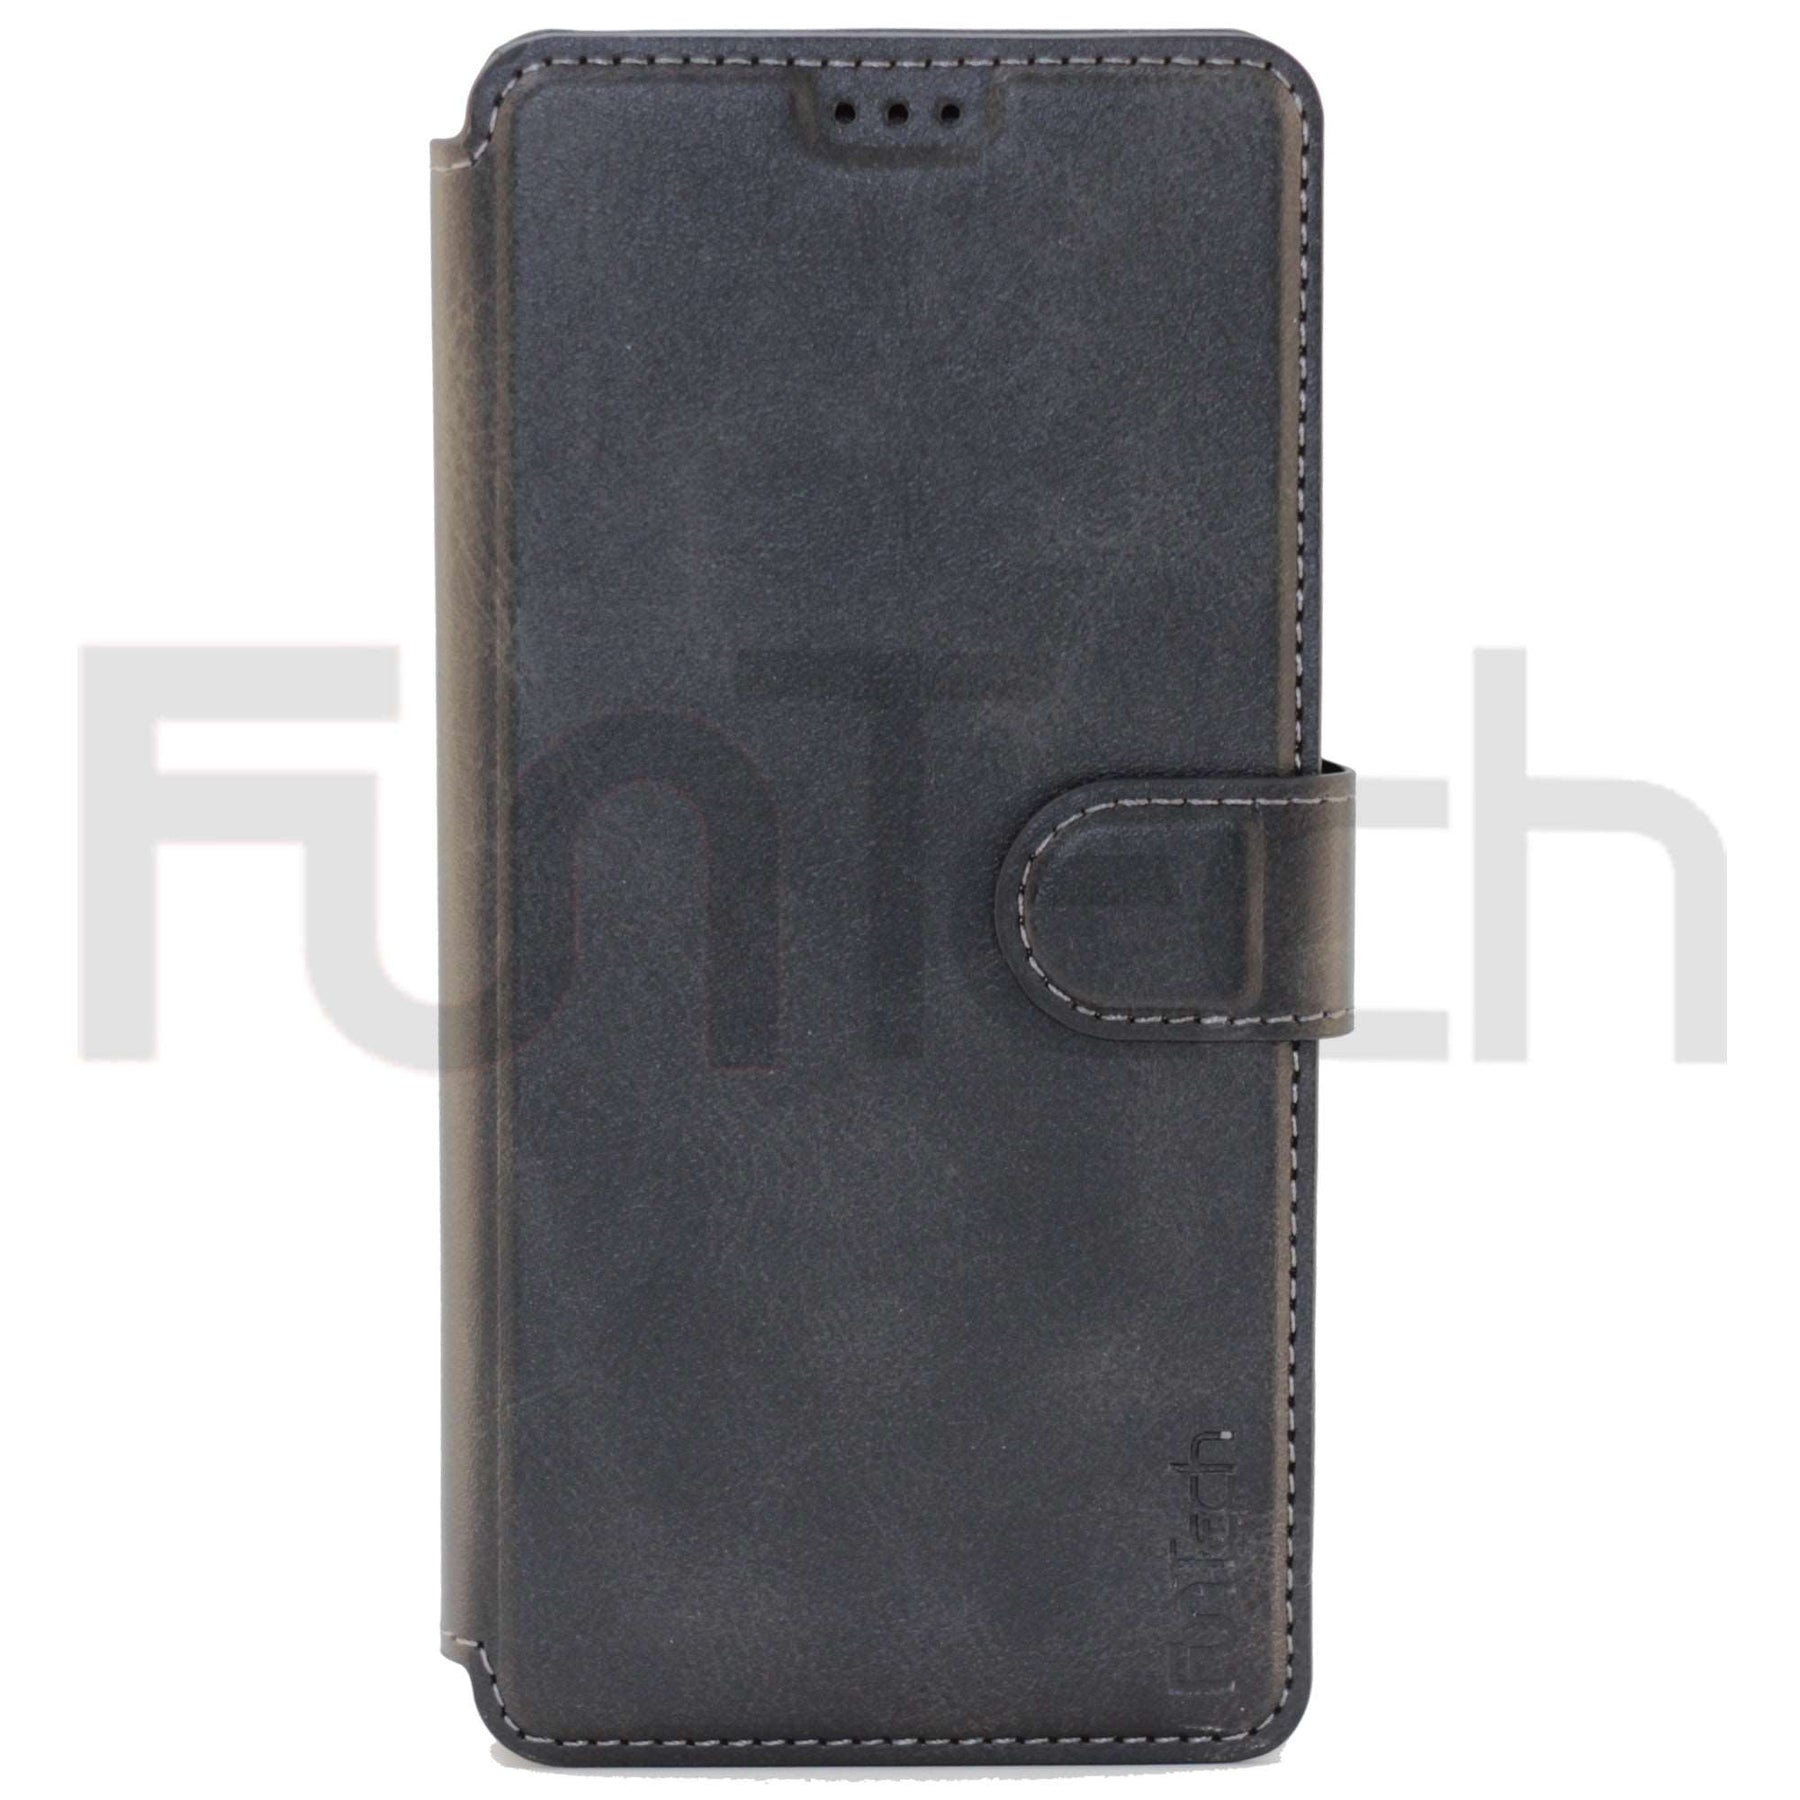 Samsung S20 Plus Leather Wallet Case, Color Black